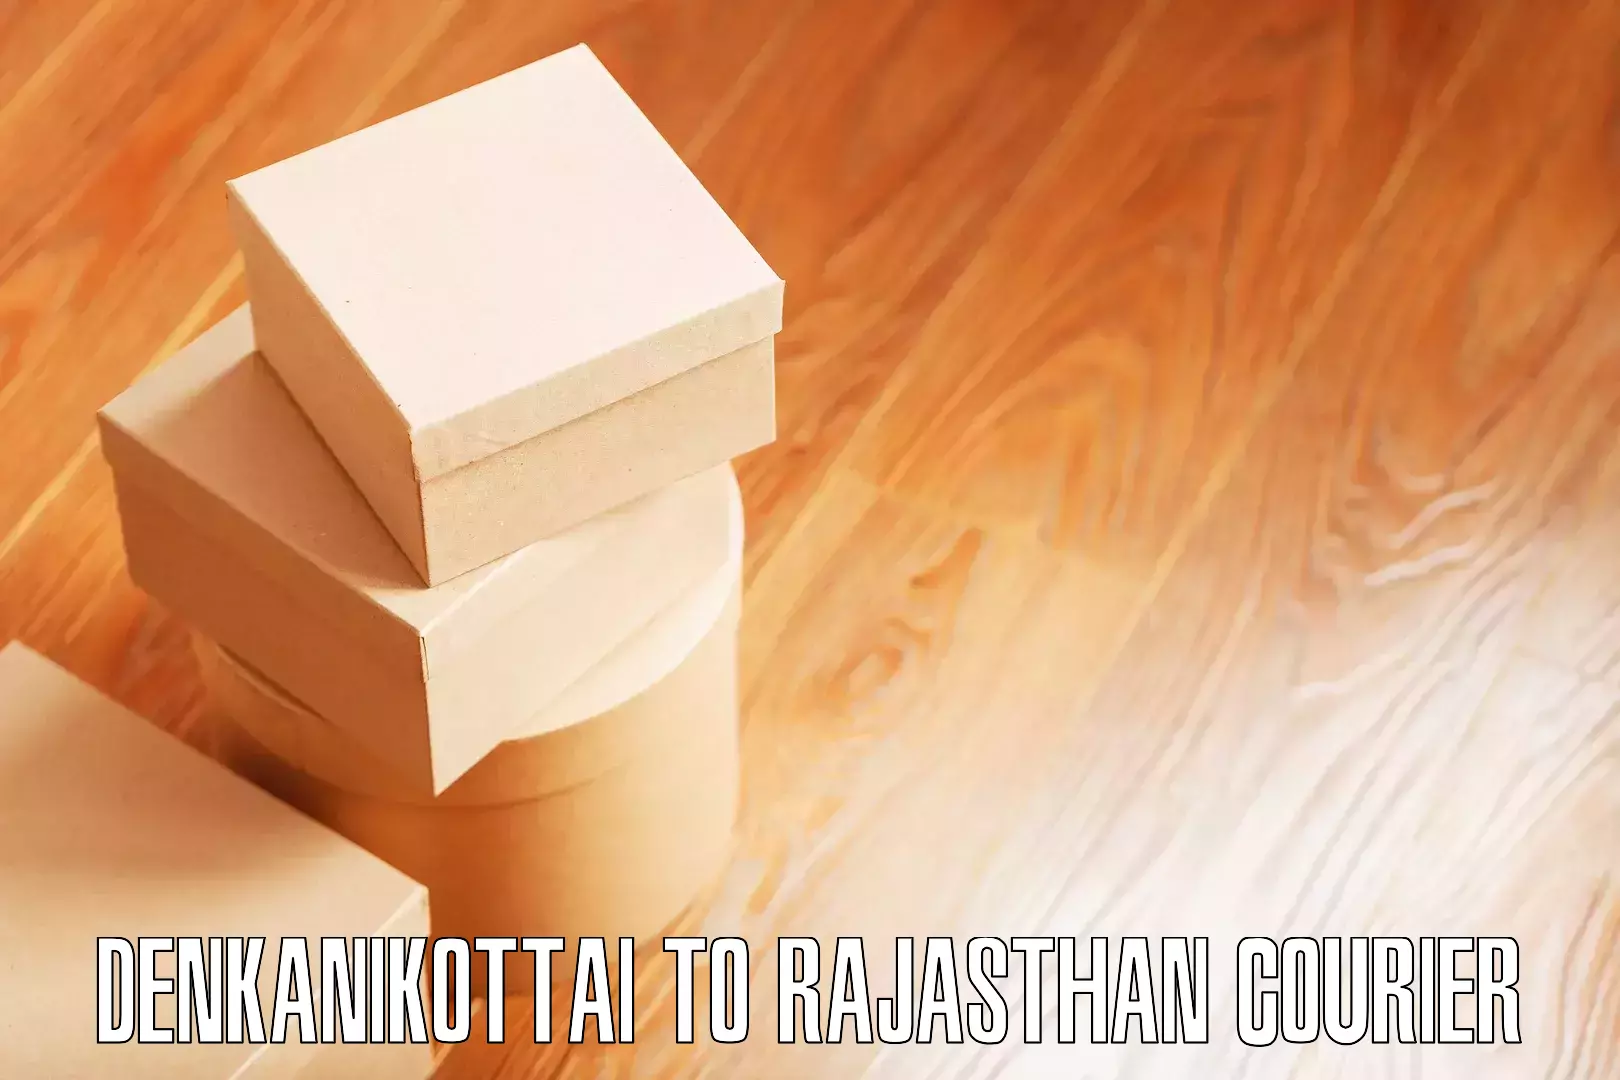 Efficient furniture shifting Denkanikottai to Rajasthan